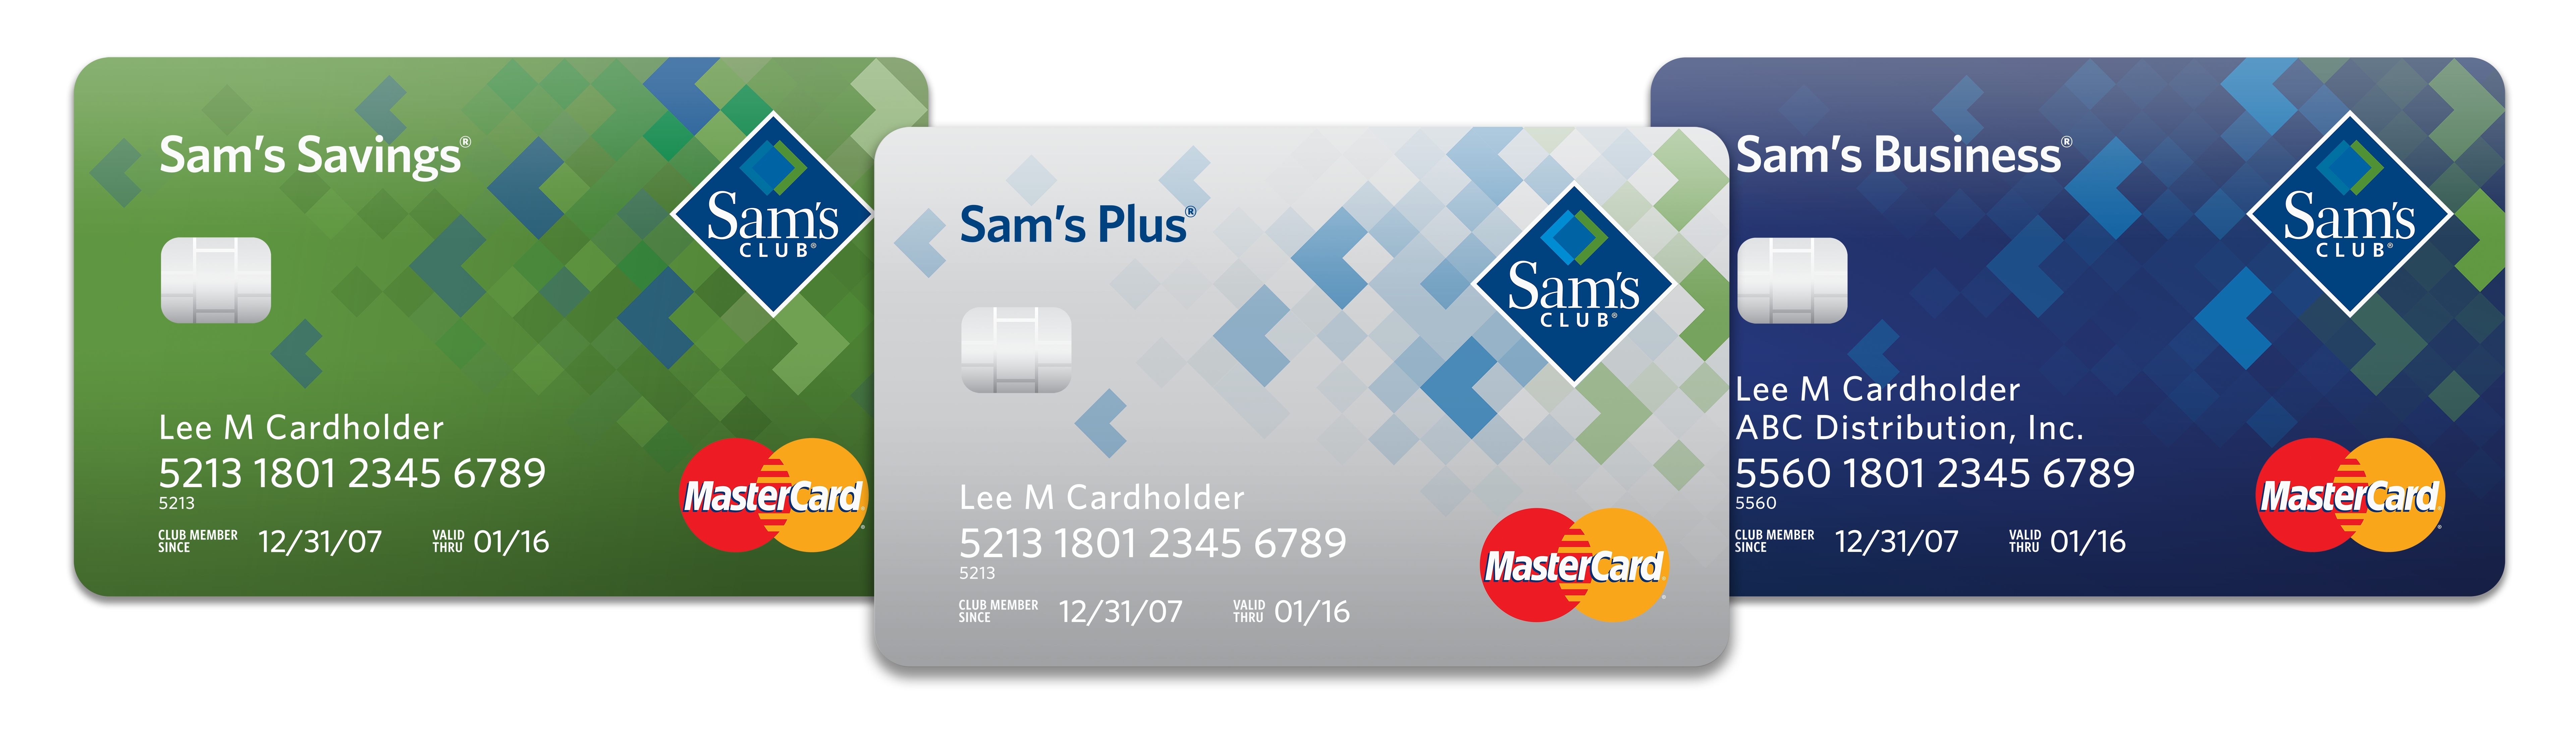 Sam’s Club 531 Cash Back Credit Card Program with Synchrony Financial